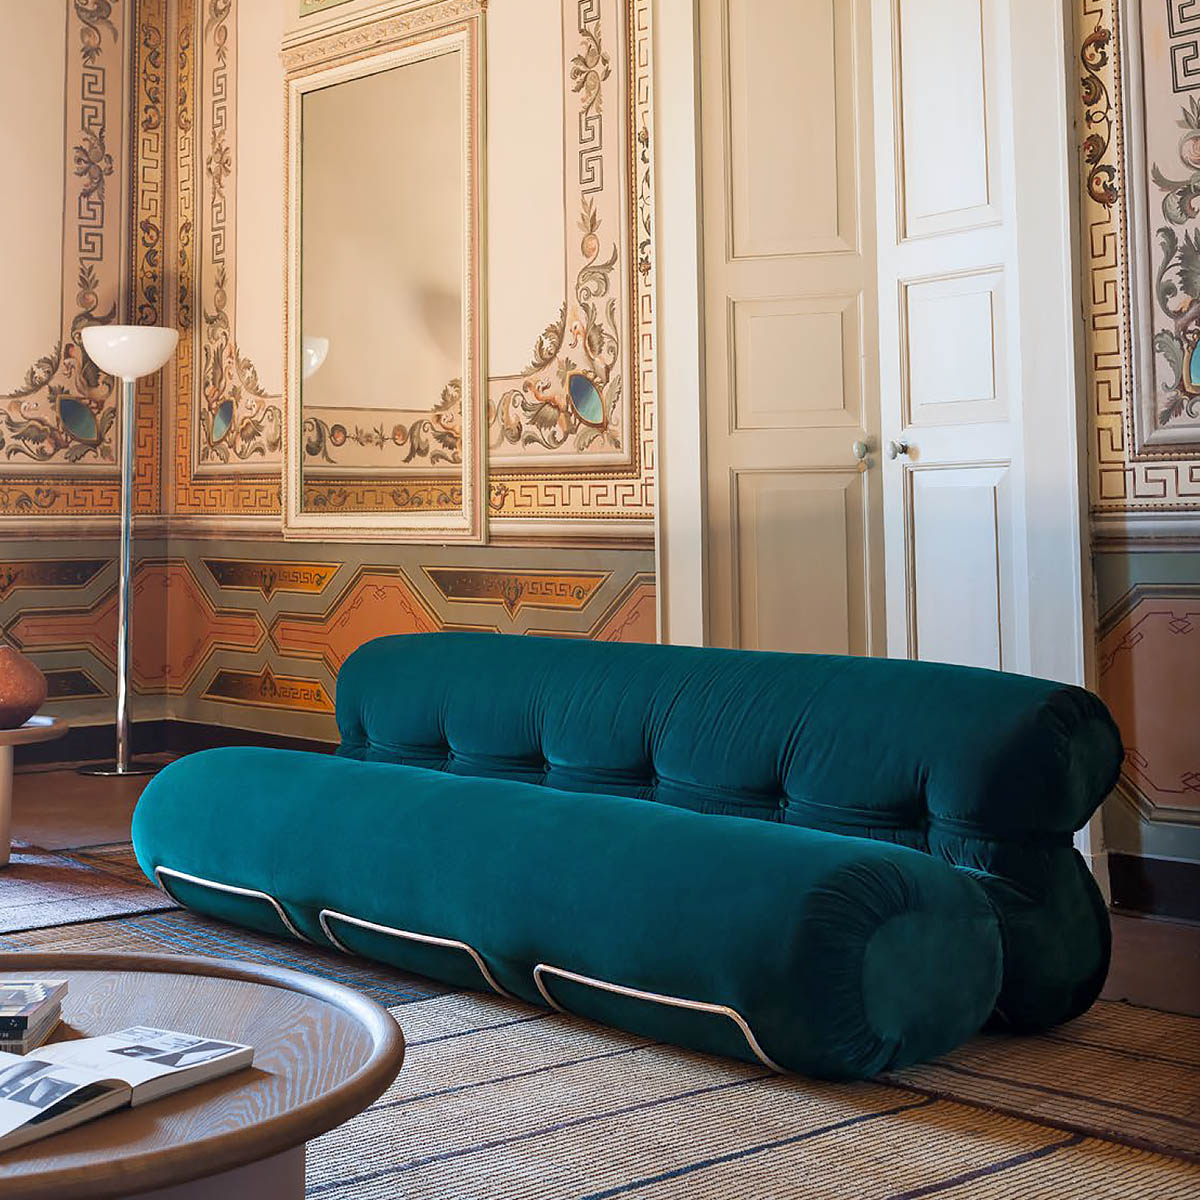 義大利家具Tacchini 義大利進口現代家具 義式沙發